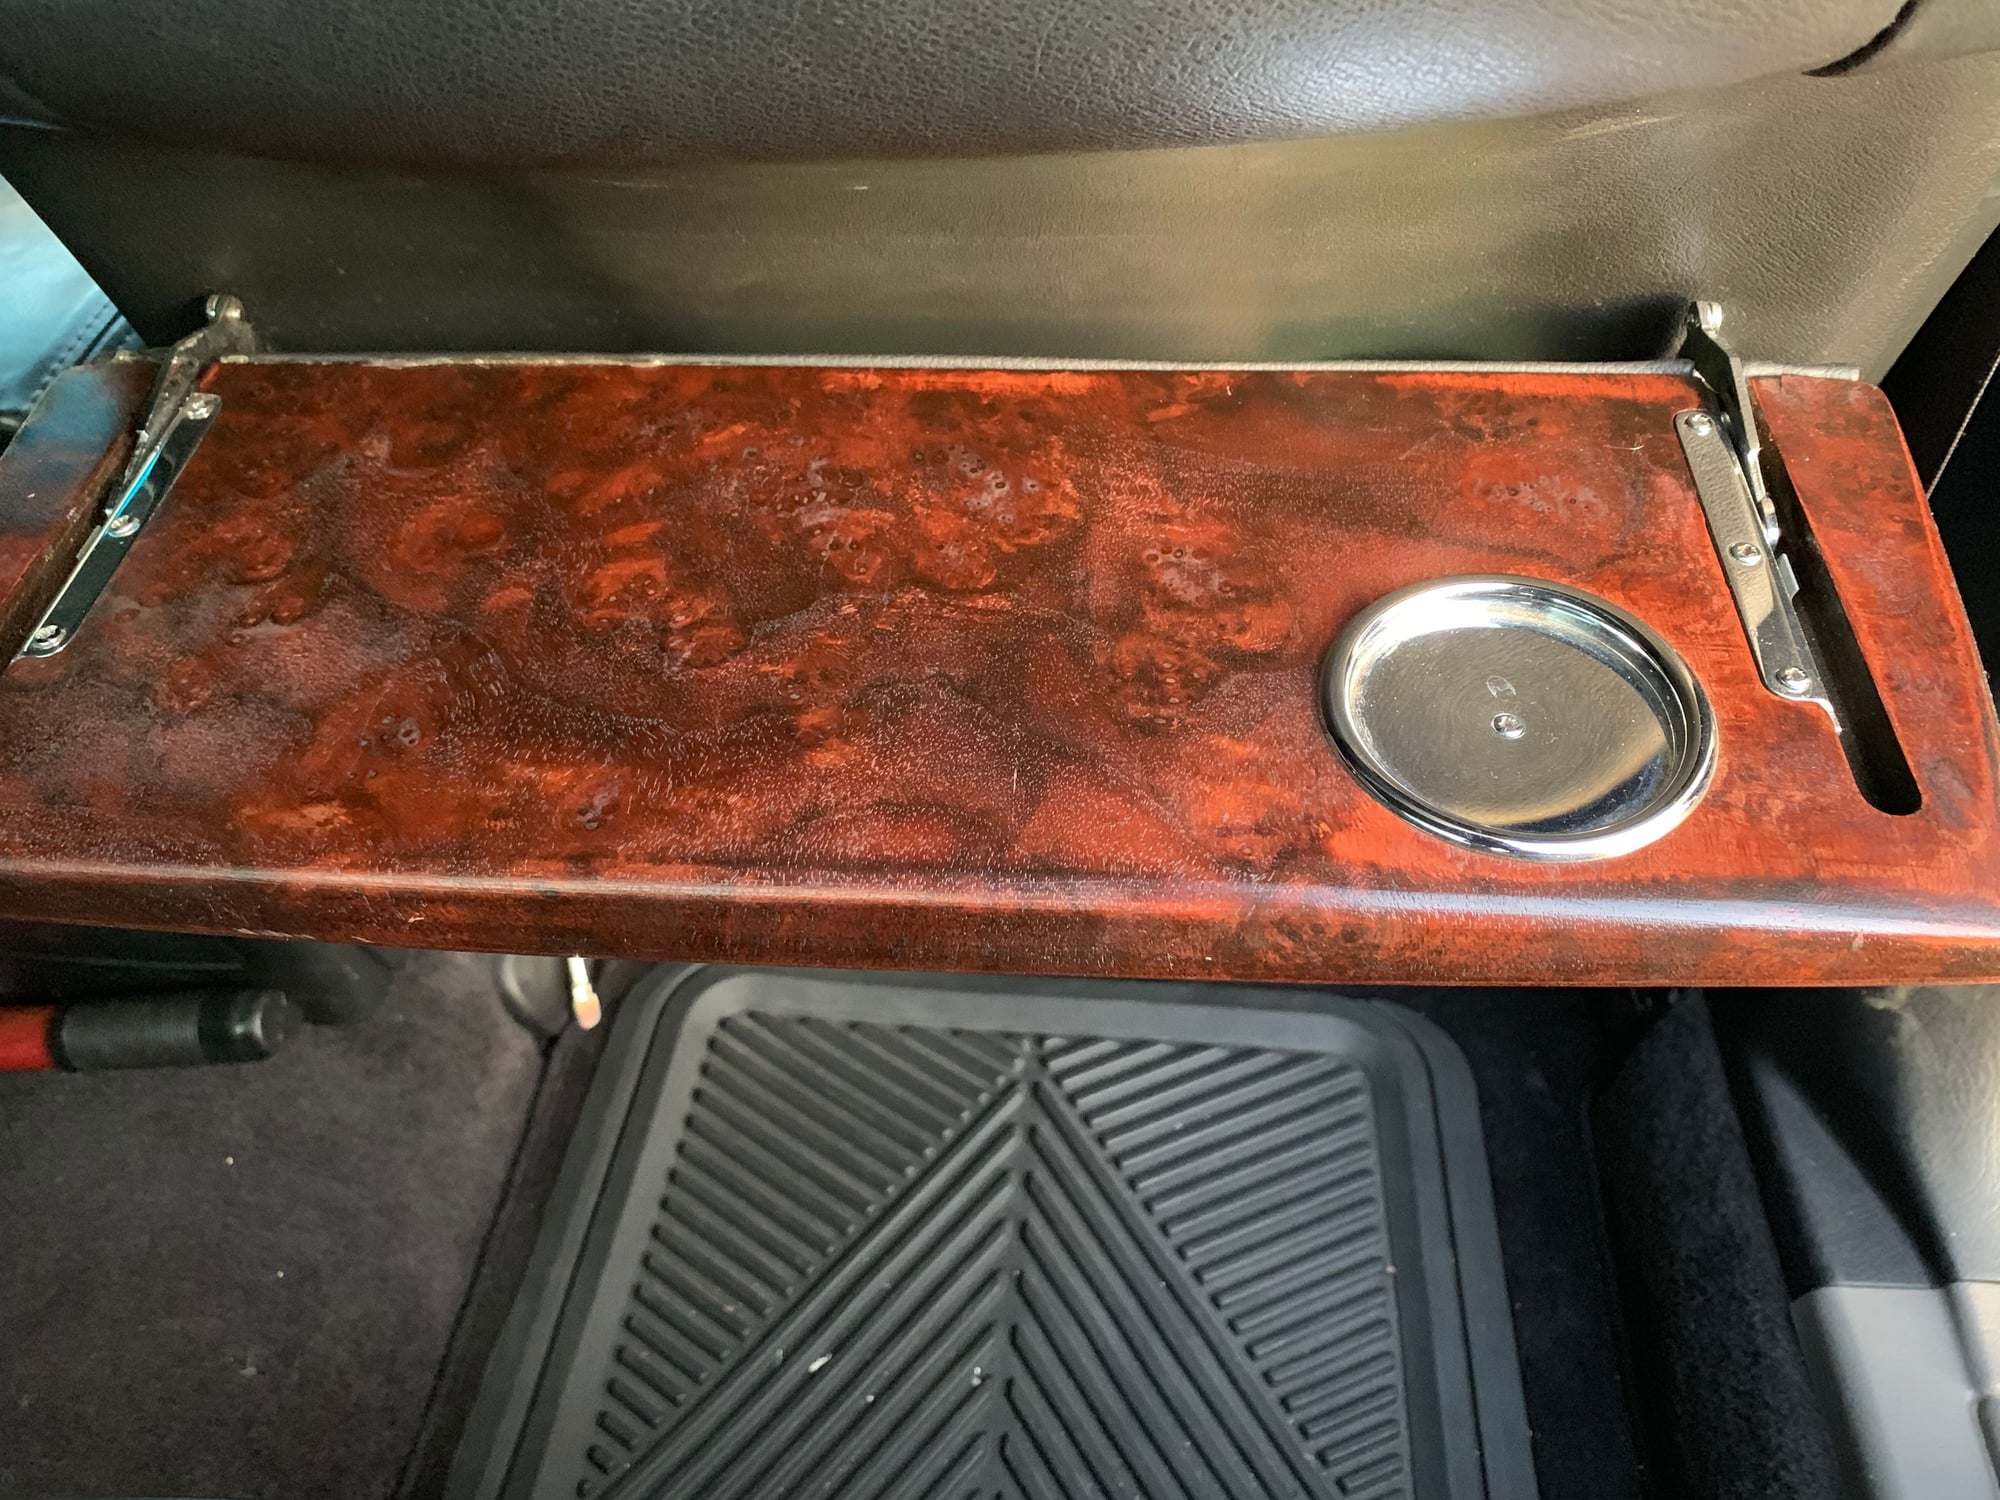 Interior/Upholstery - FS: Rear Trays, Speedometer bezel & shift knob - Used - 1999 to 2003 Acura TL - Sacramento, CA 95828, United States